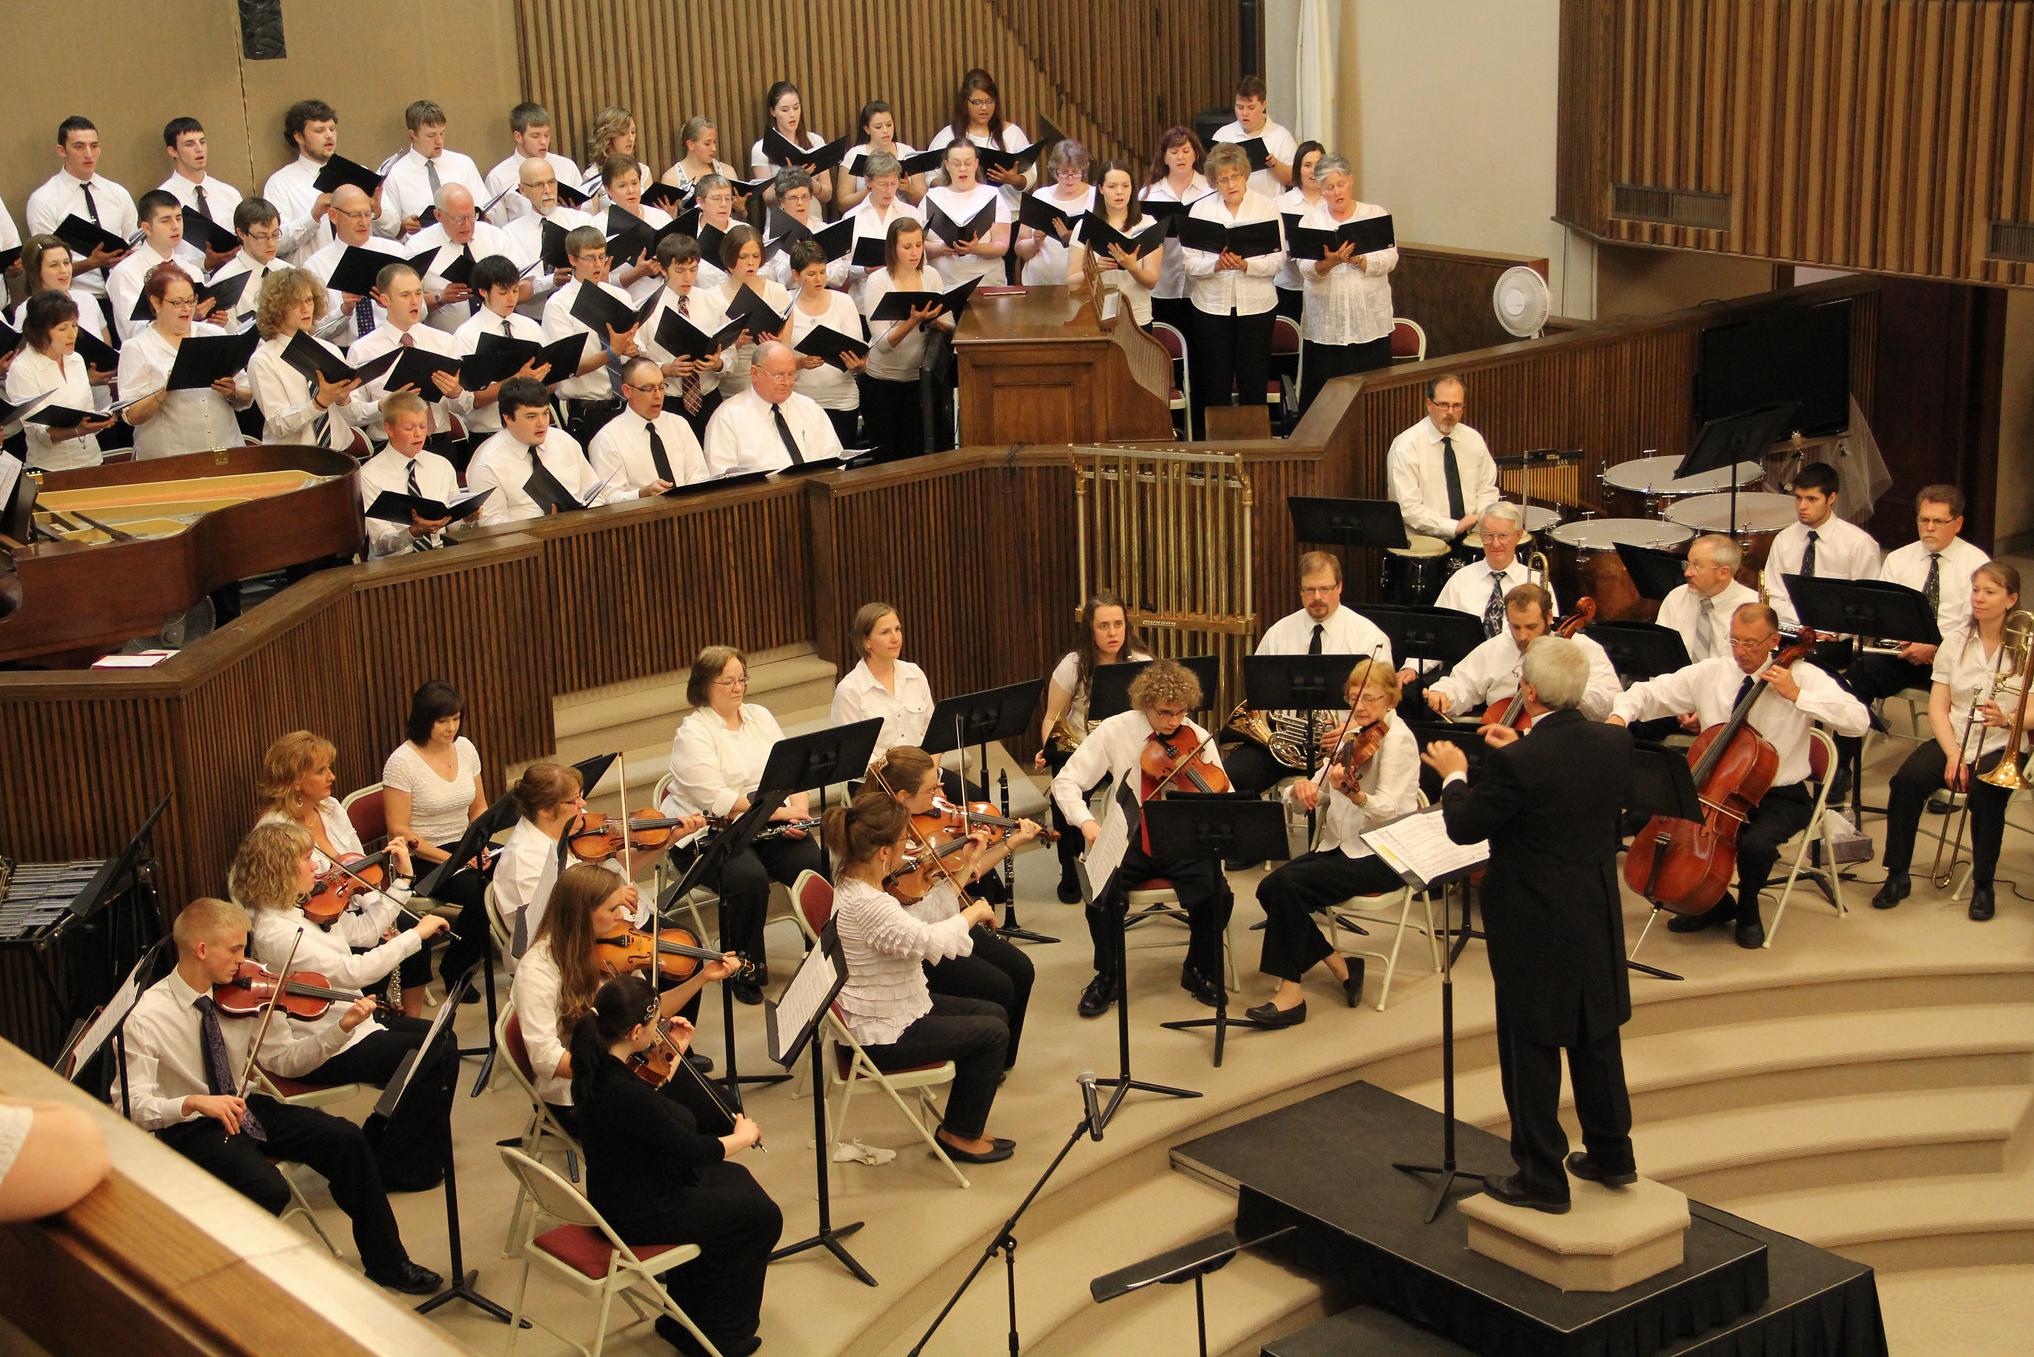 a choir performs in a church